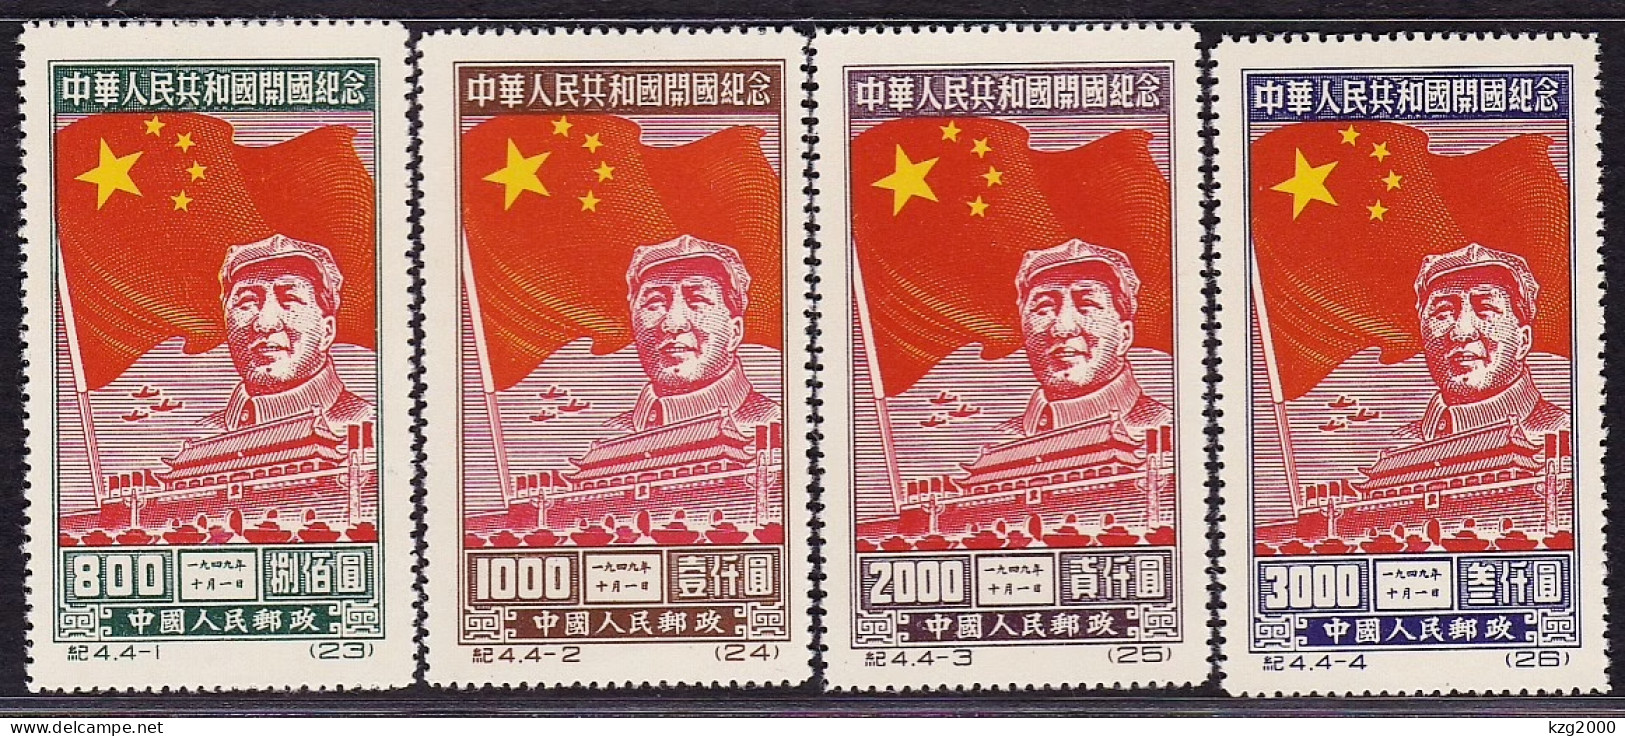 China 1950 Stamps C4 Commemorating Inauguration Of PRC 2nd Print Stamp - Abarten Und Kuriositäten